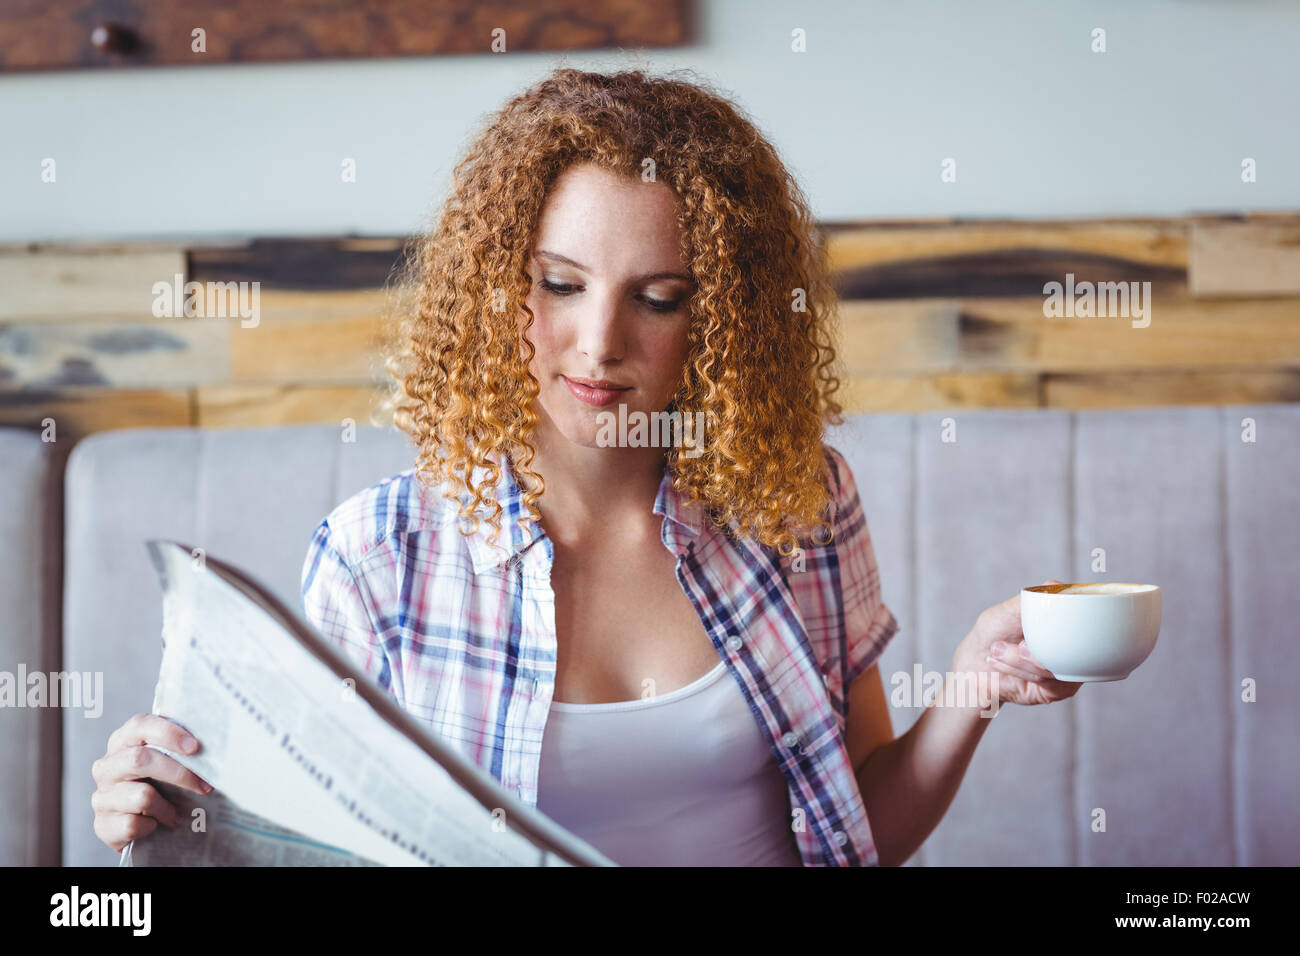 Bonita chica de cabello rizado con la taza de café y leyendo el periódico Foto de stock